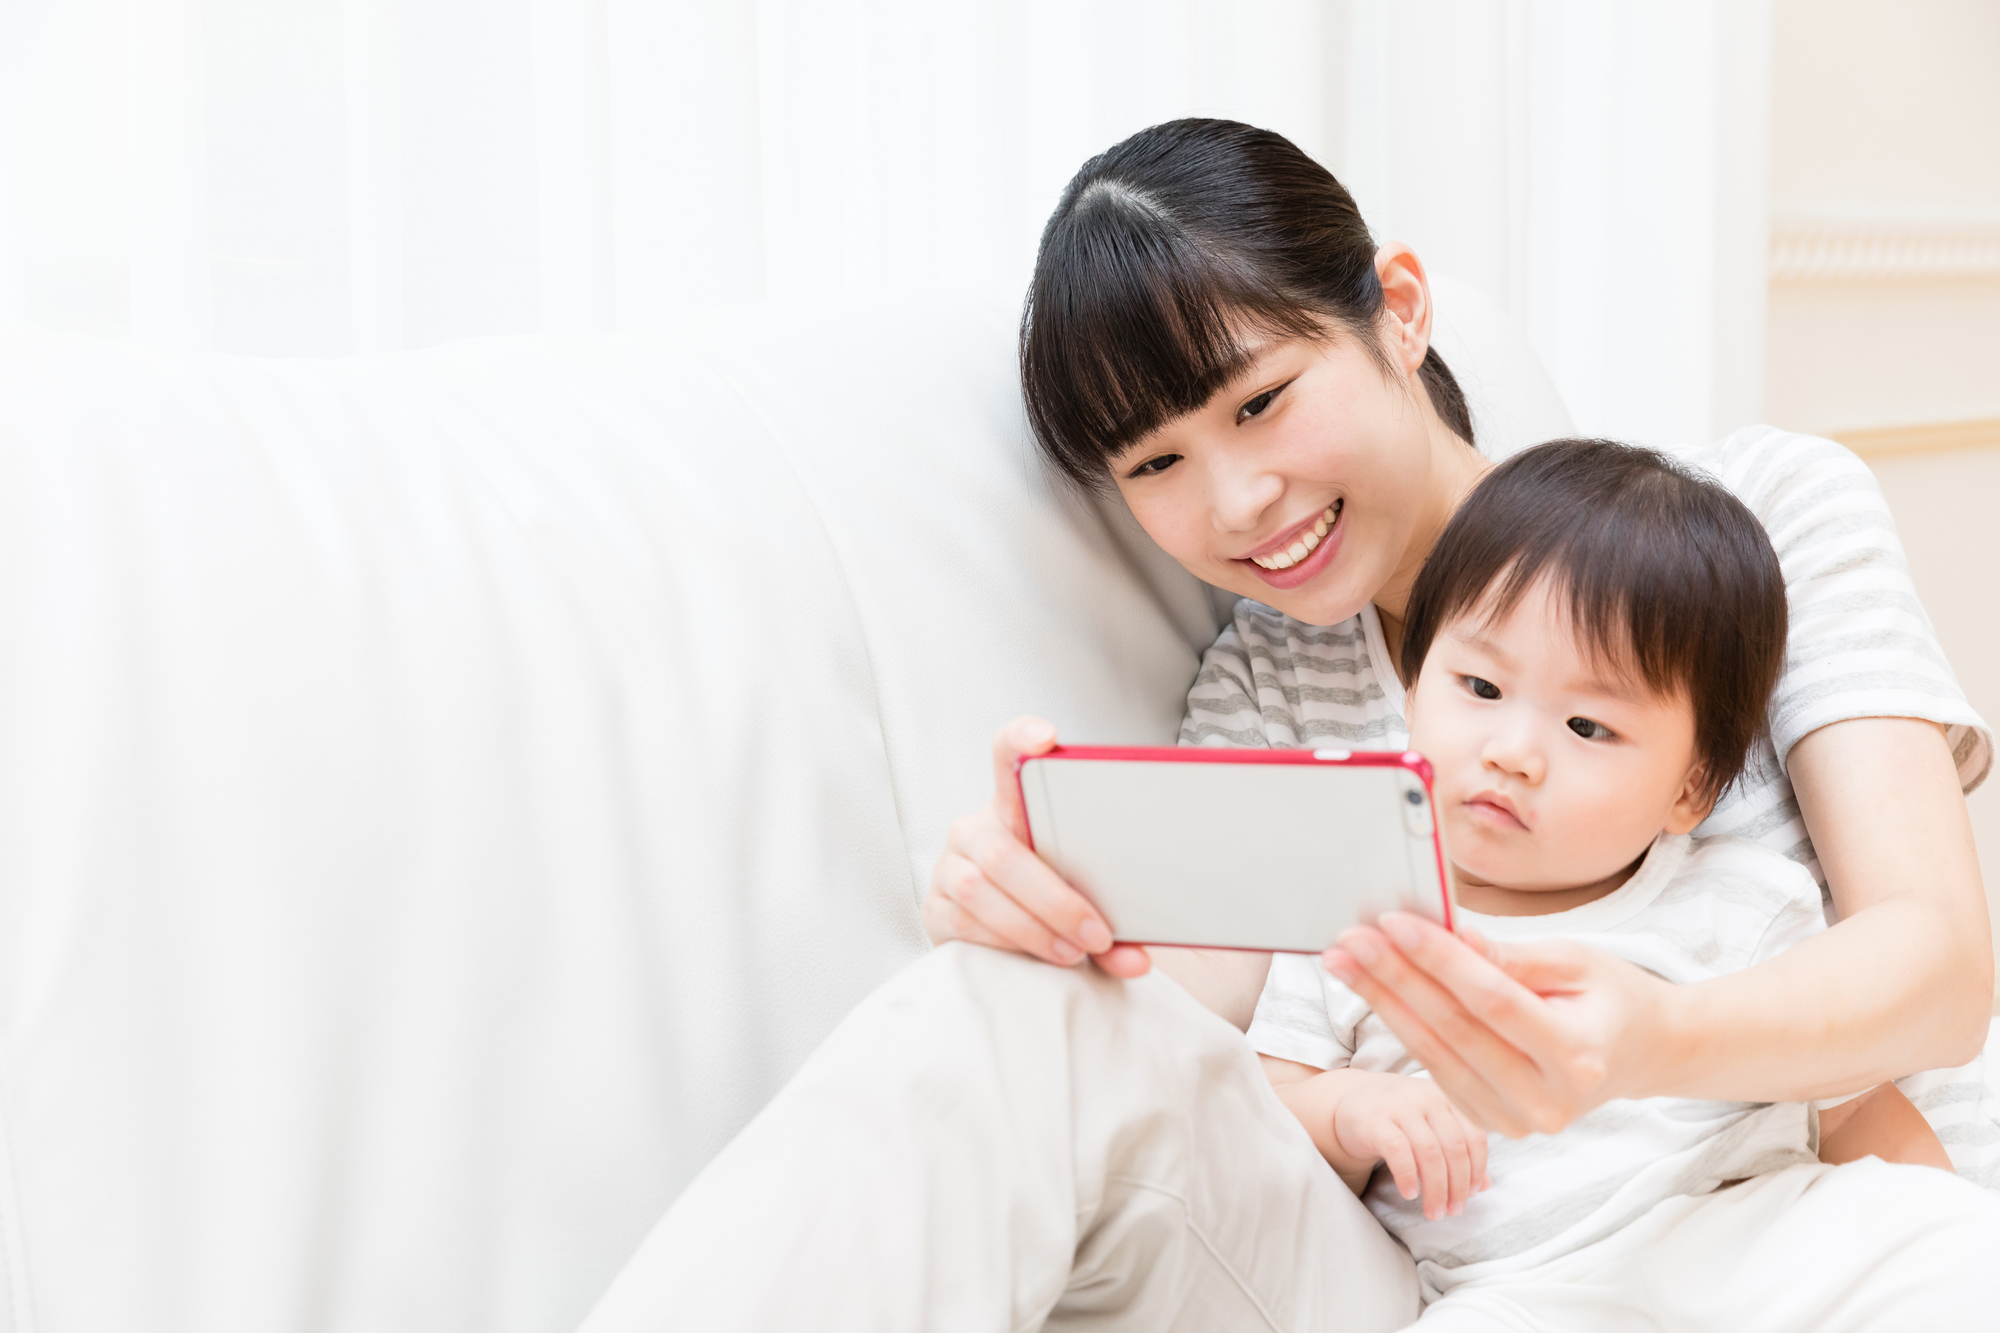 日本の乳幼児家庭における映像を活用した英語学習環境づくり 情報の意味づけ 応答的なやりとり 繰り返し視聴 バイリンガル教育の研究機関 バイリンガルサイエンス研究所